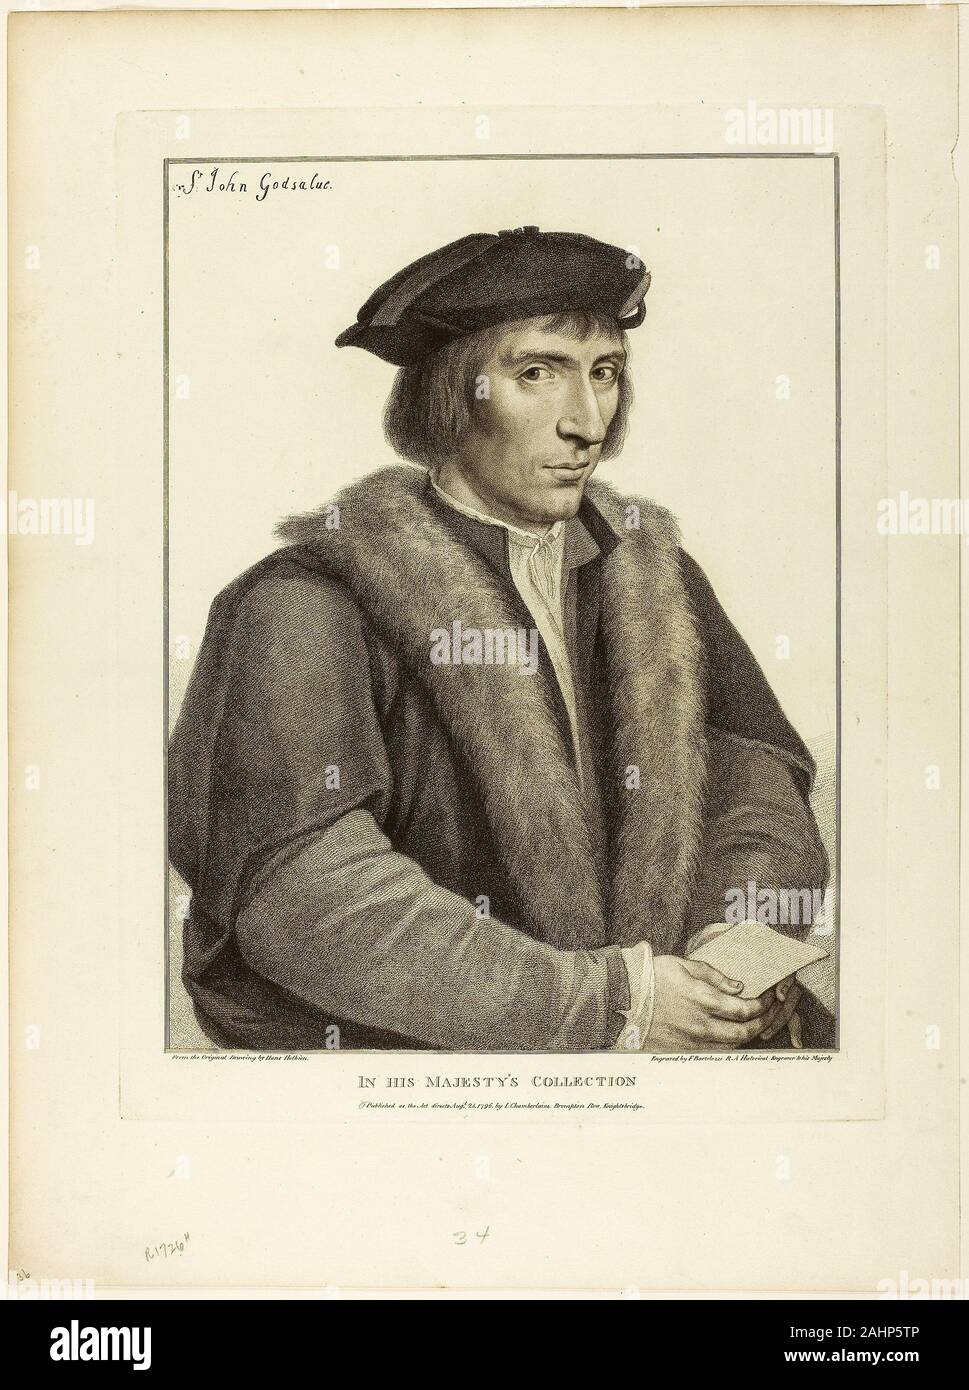 Francesco Bartolozzi. Sir John Godsalve. 1796. L'Italia. Imbianchino della incisione su avorio carta intessuta Foto Stock